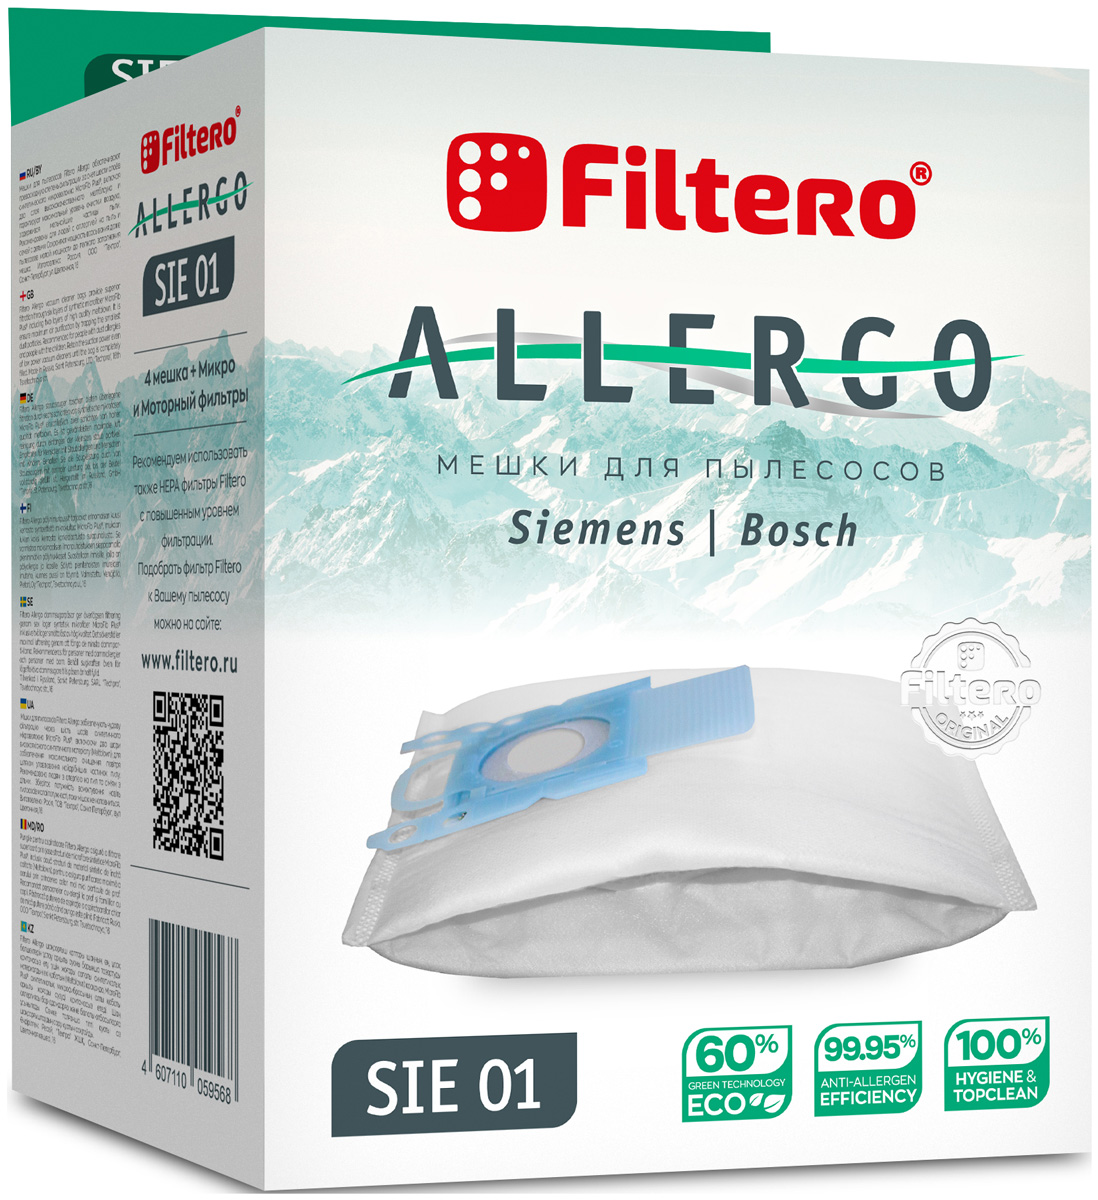 пылесборники filtero fls 01 s bag allergo 4 шт моторный фильтр и микрофильтр Пылесборники Filtero SIE 01 Allergo 4 шт. + моторный фильтр и микрофильтр